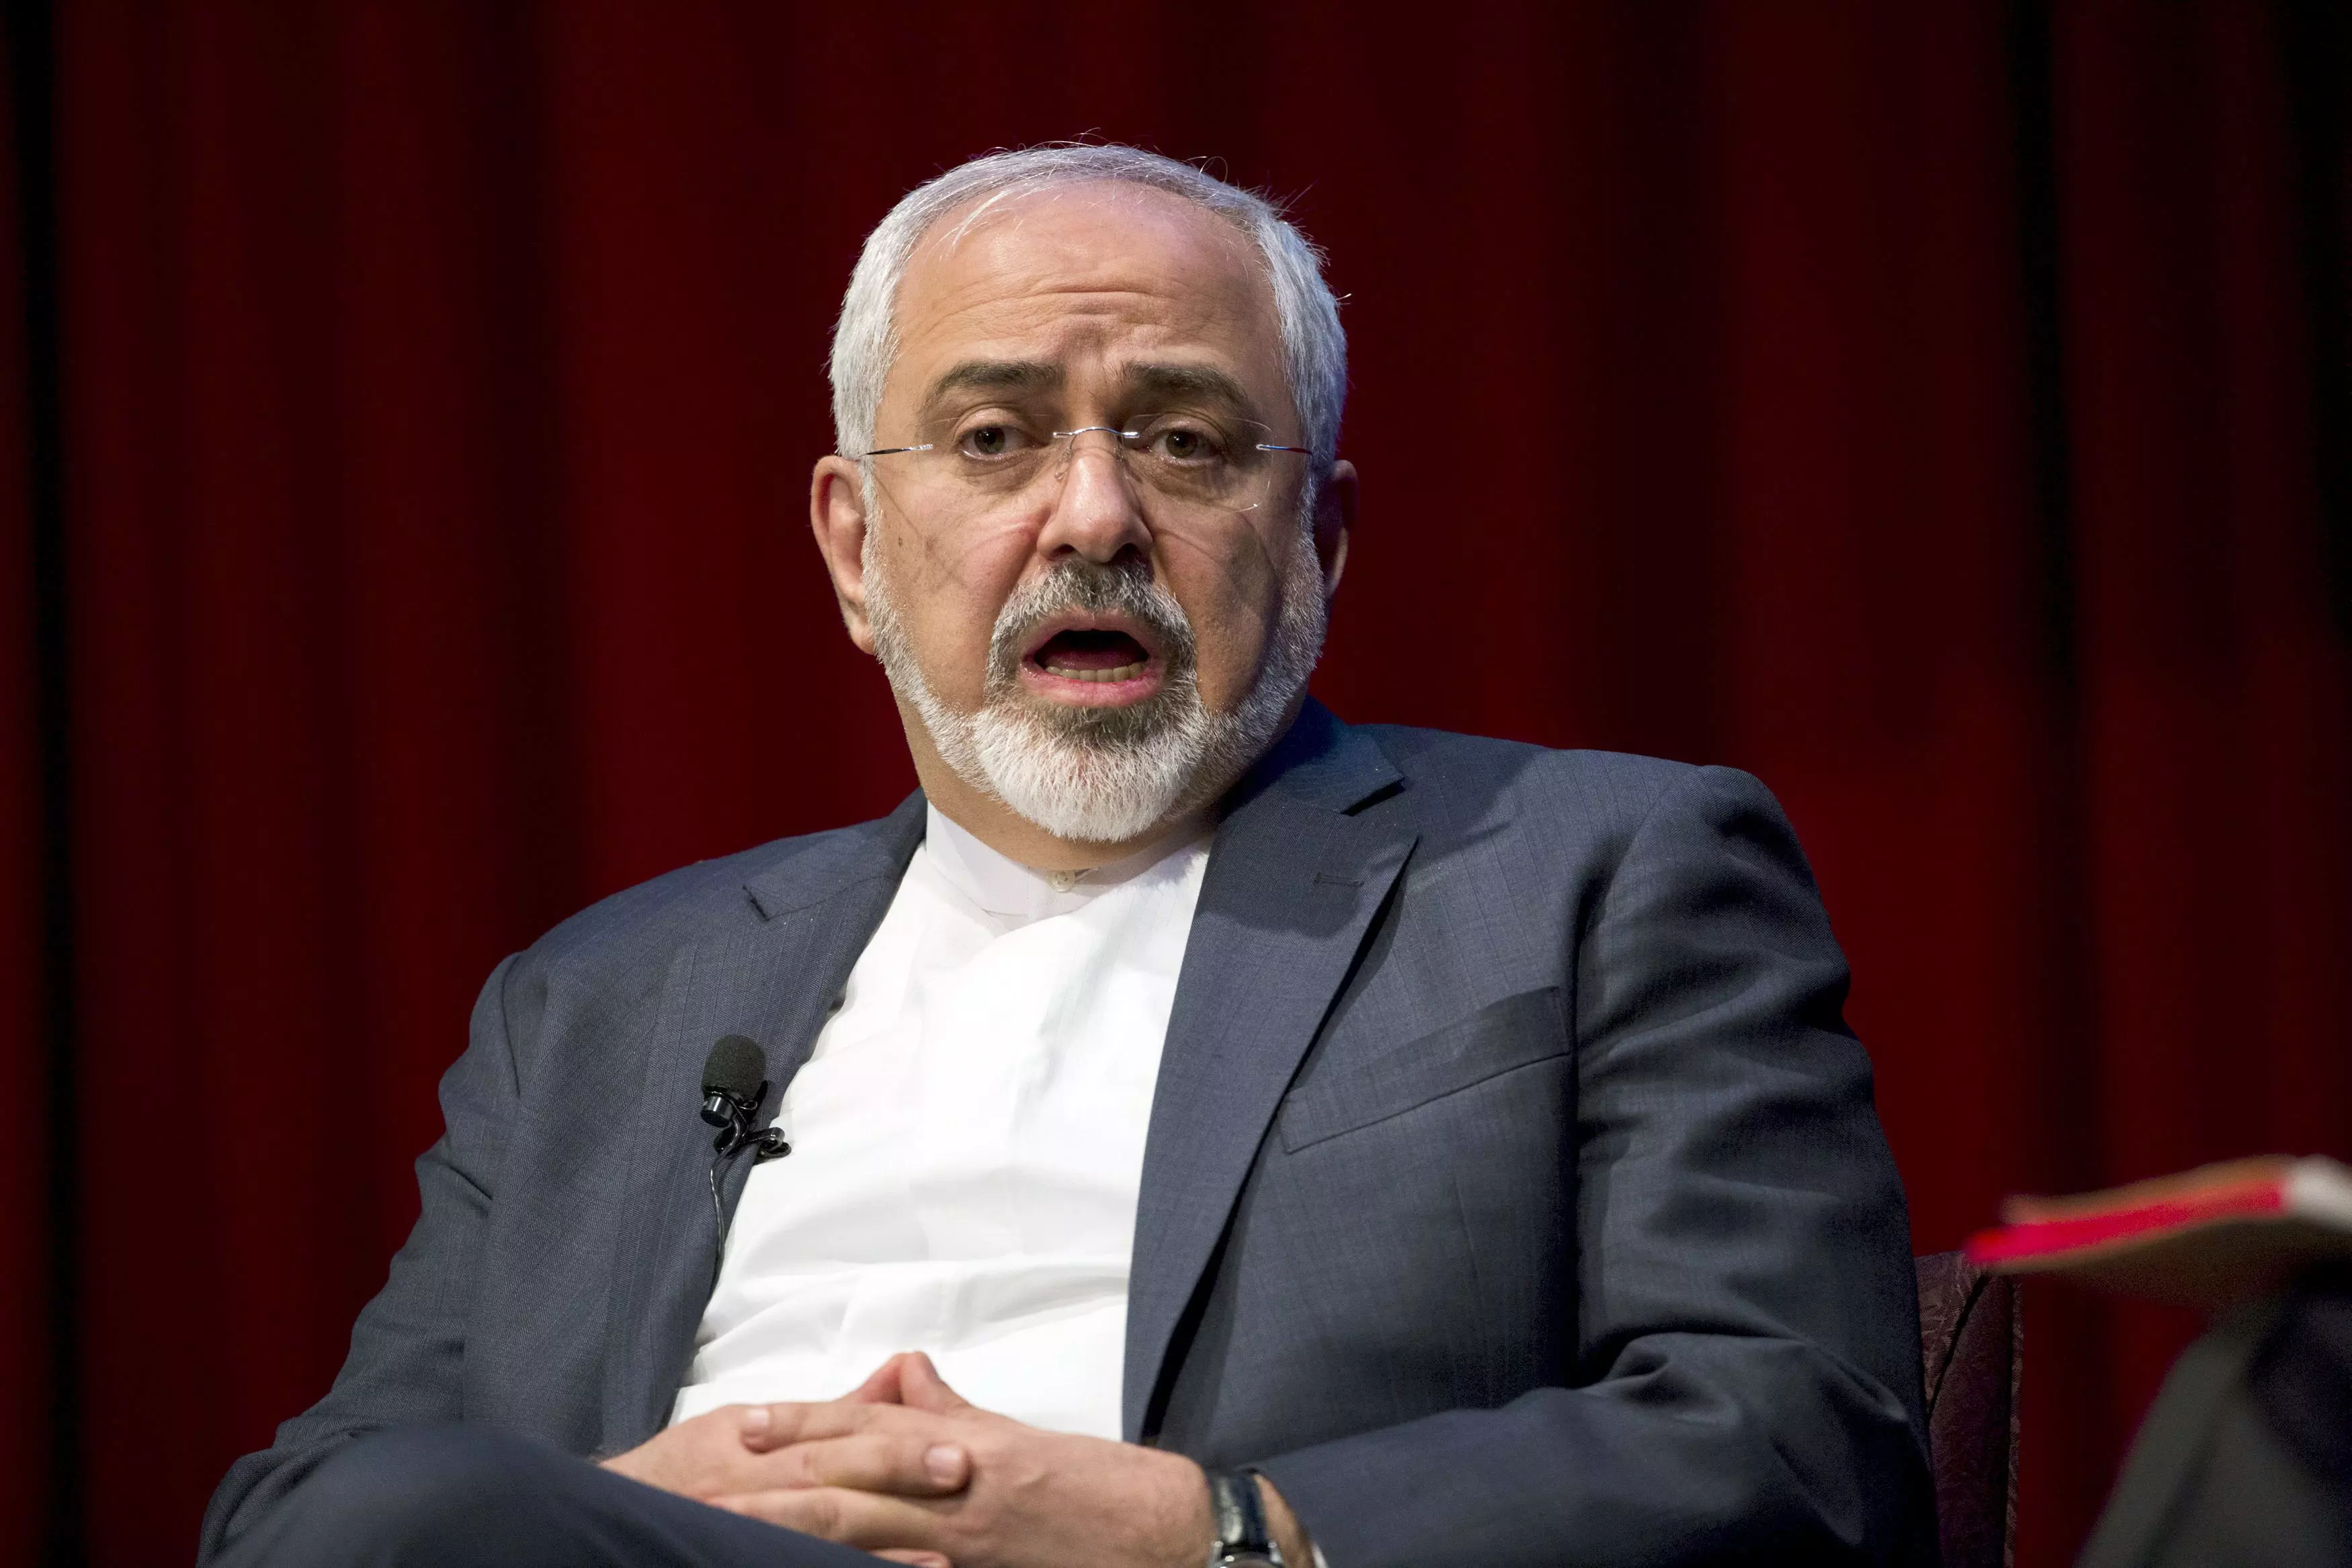 שר החוץ של איראן זריף בדיון באוניברסיטה בניו יורק בחודש שעבר